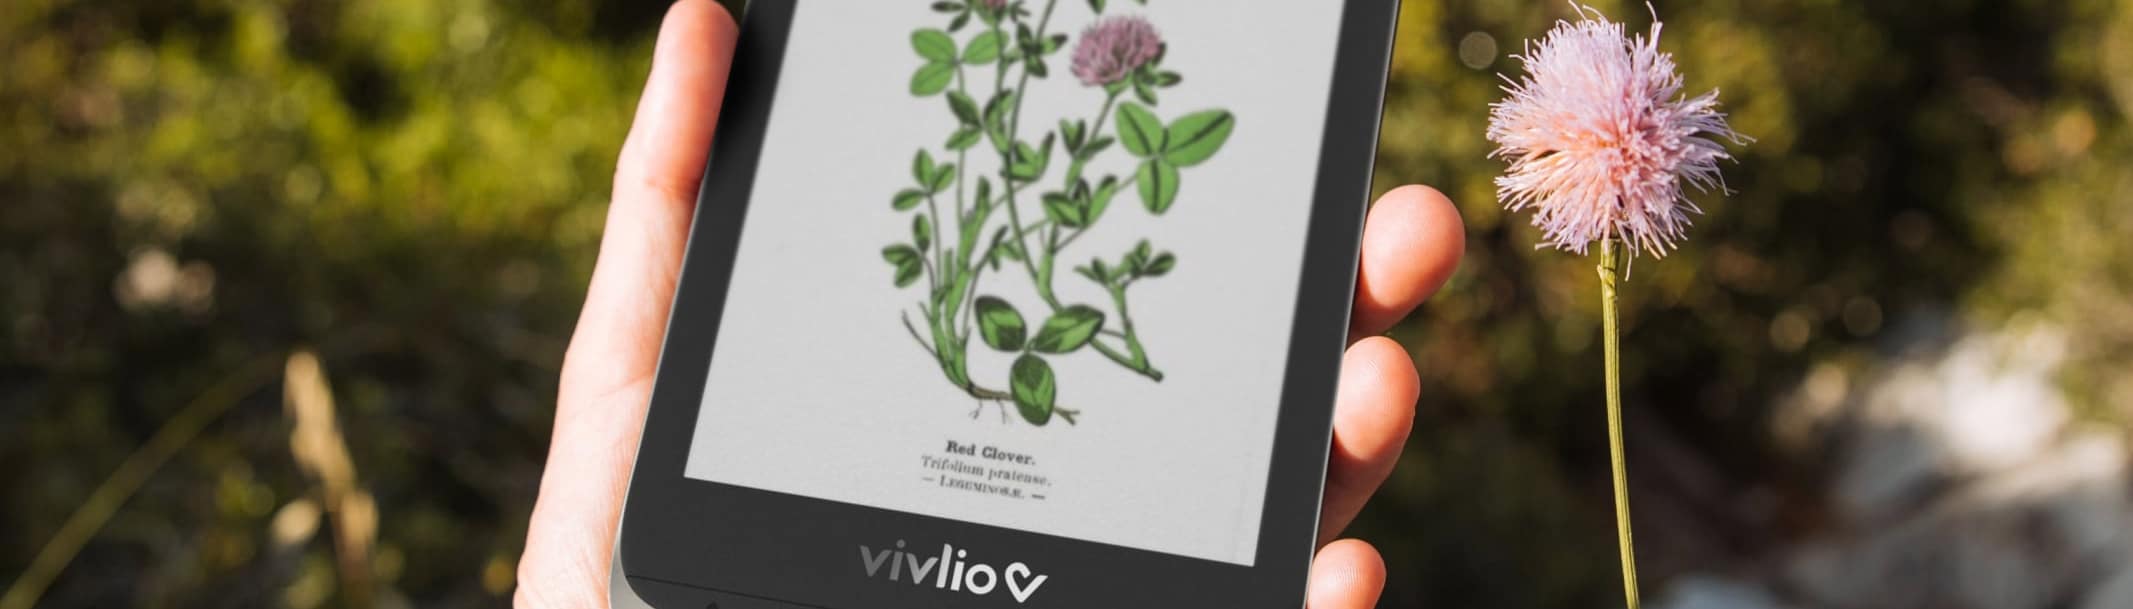 Vivlio Color – La liseuse couleur arrive en France en février